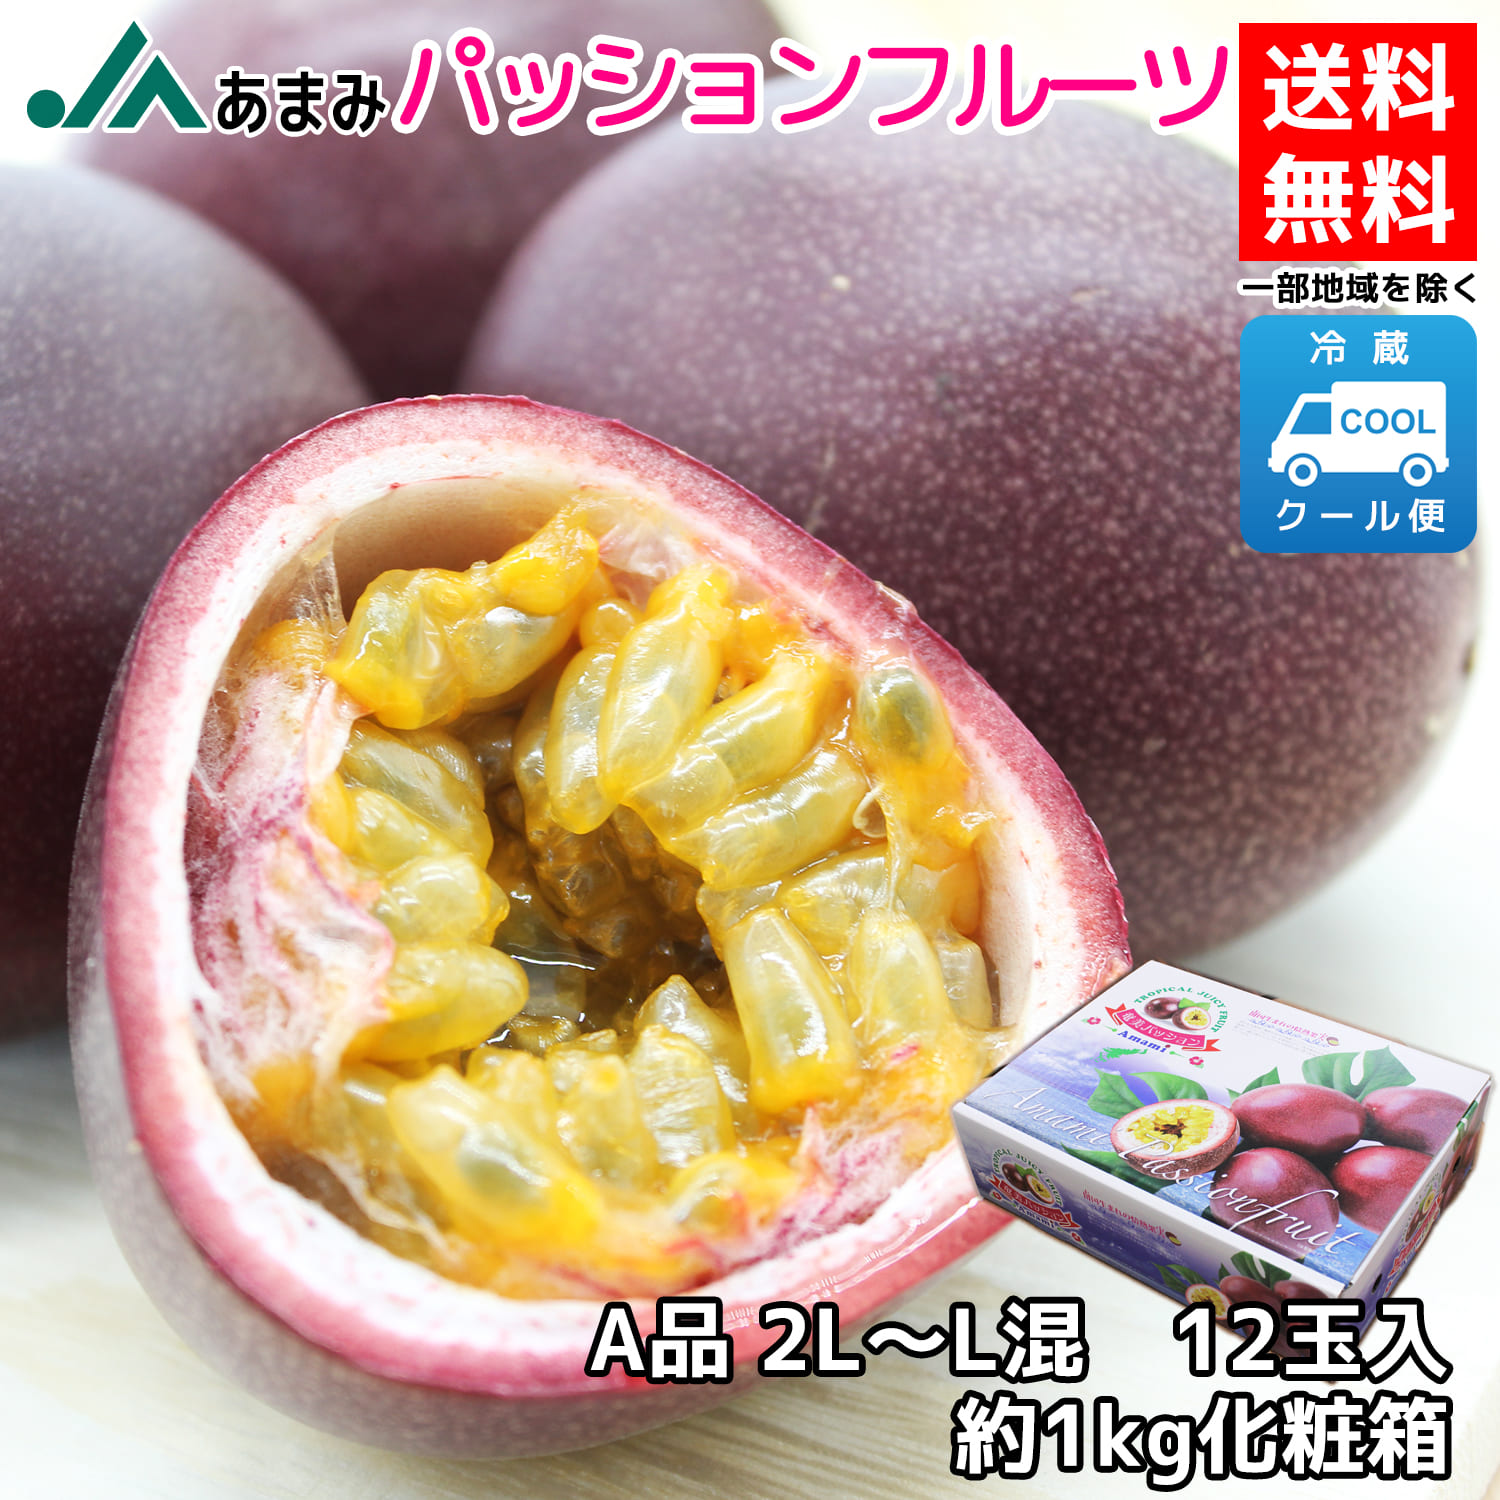 ポケットいっぱい ☆南国のスーパーフルーツ☆奄美大島産 無農薬